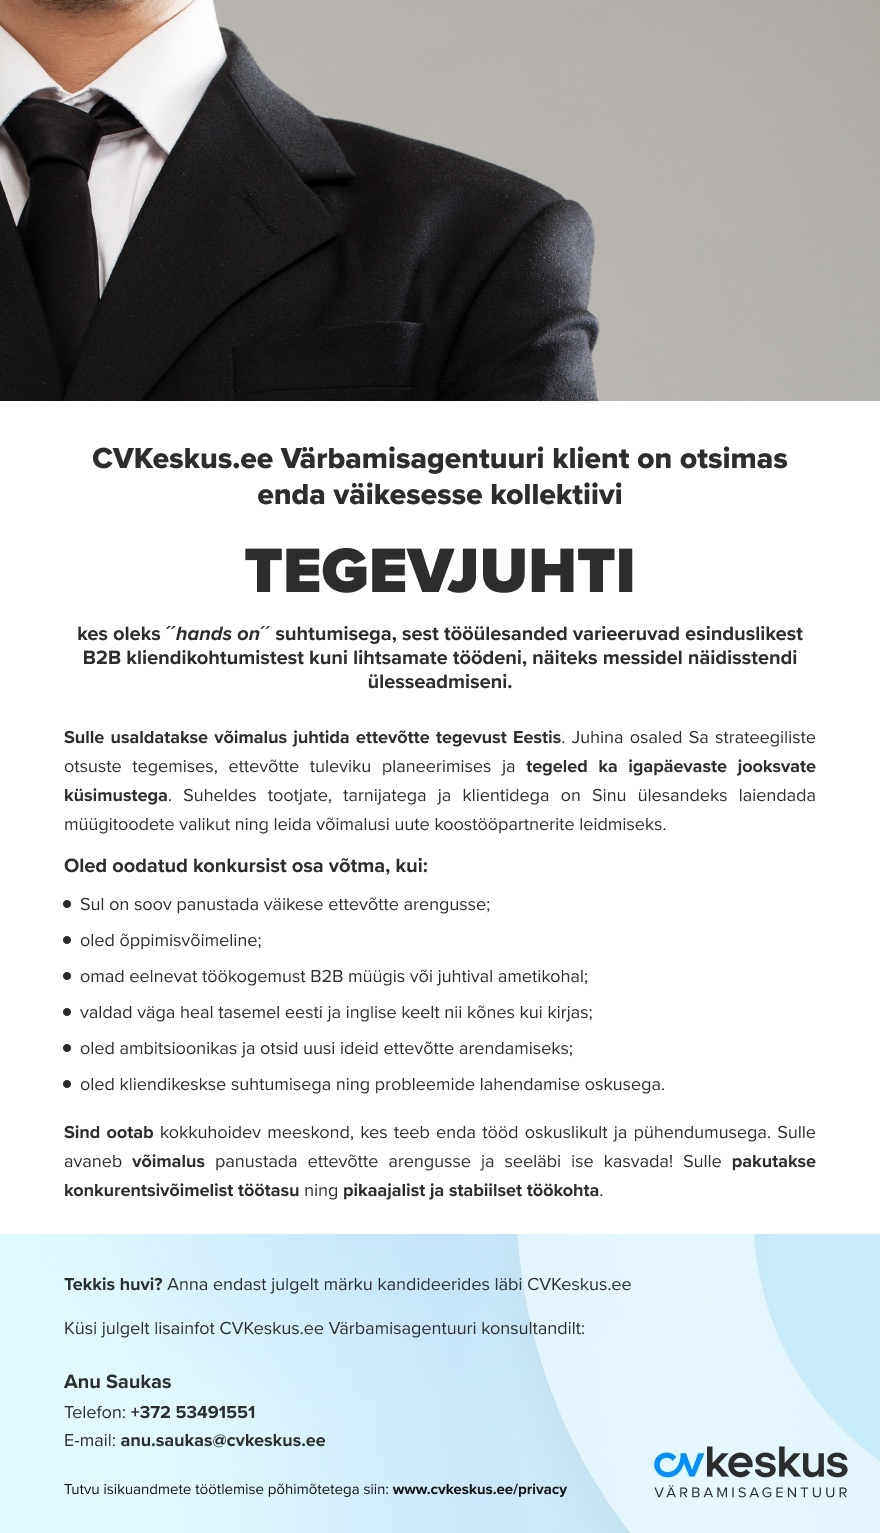 CVKeskus.ee Värbamisagentuuri klient Tegevjuht